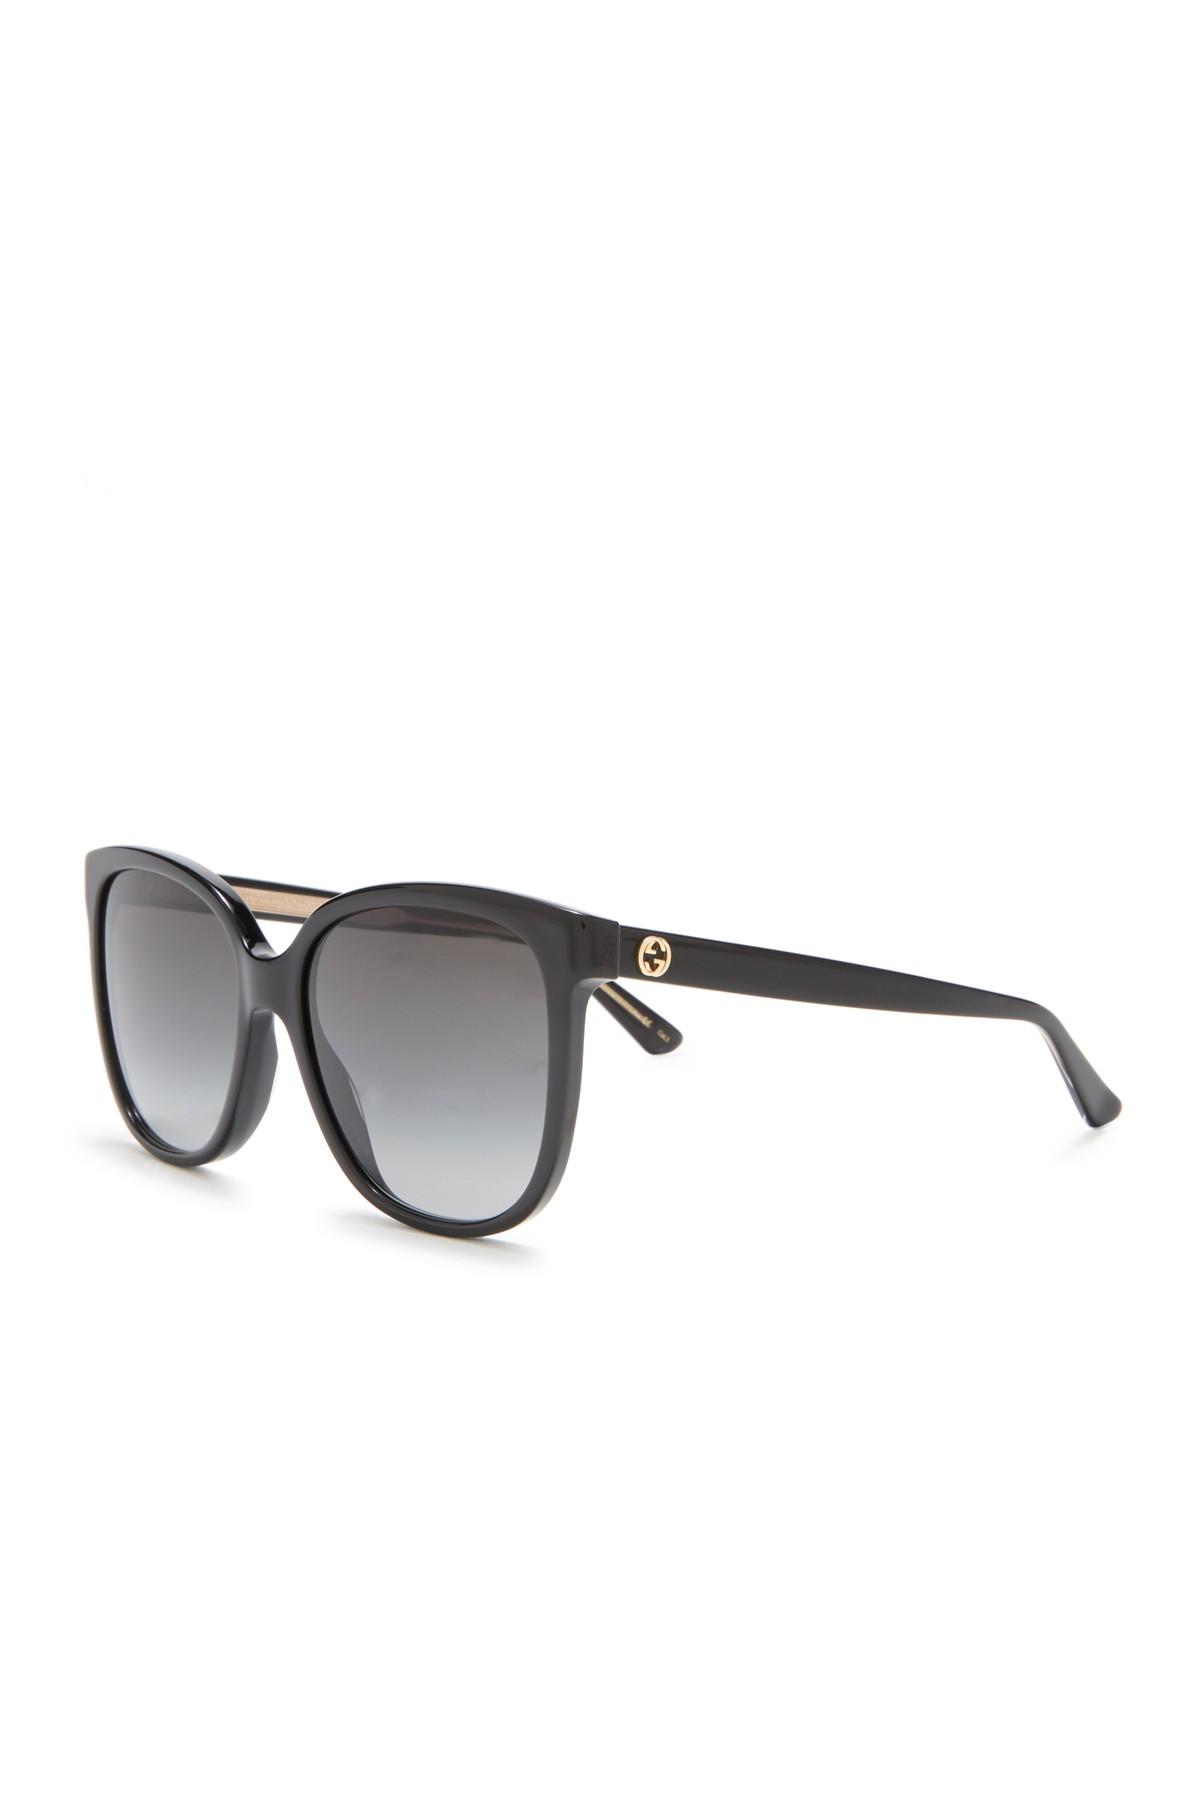 Gucci 55mm Oversized Sunglasses in 